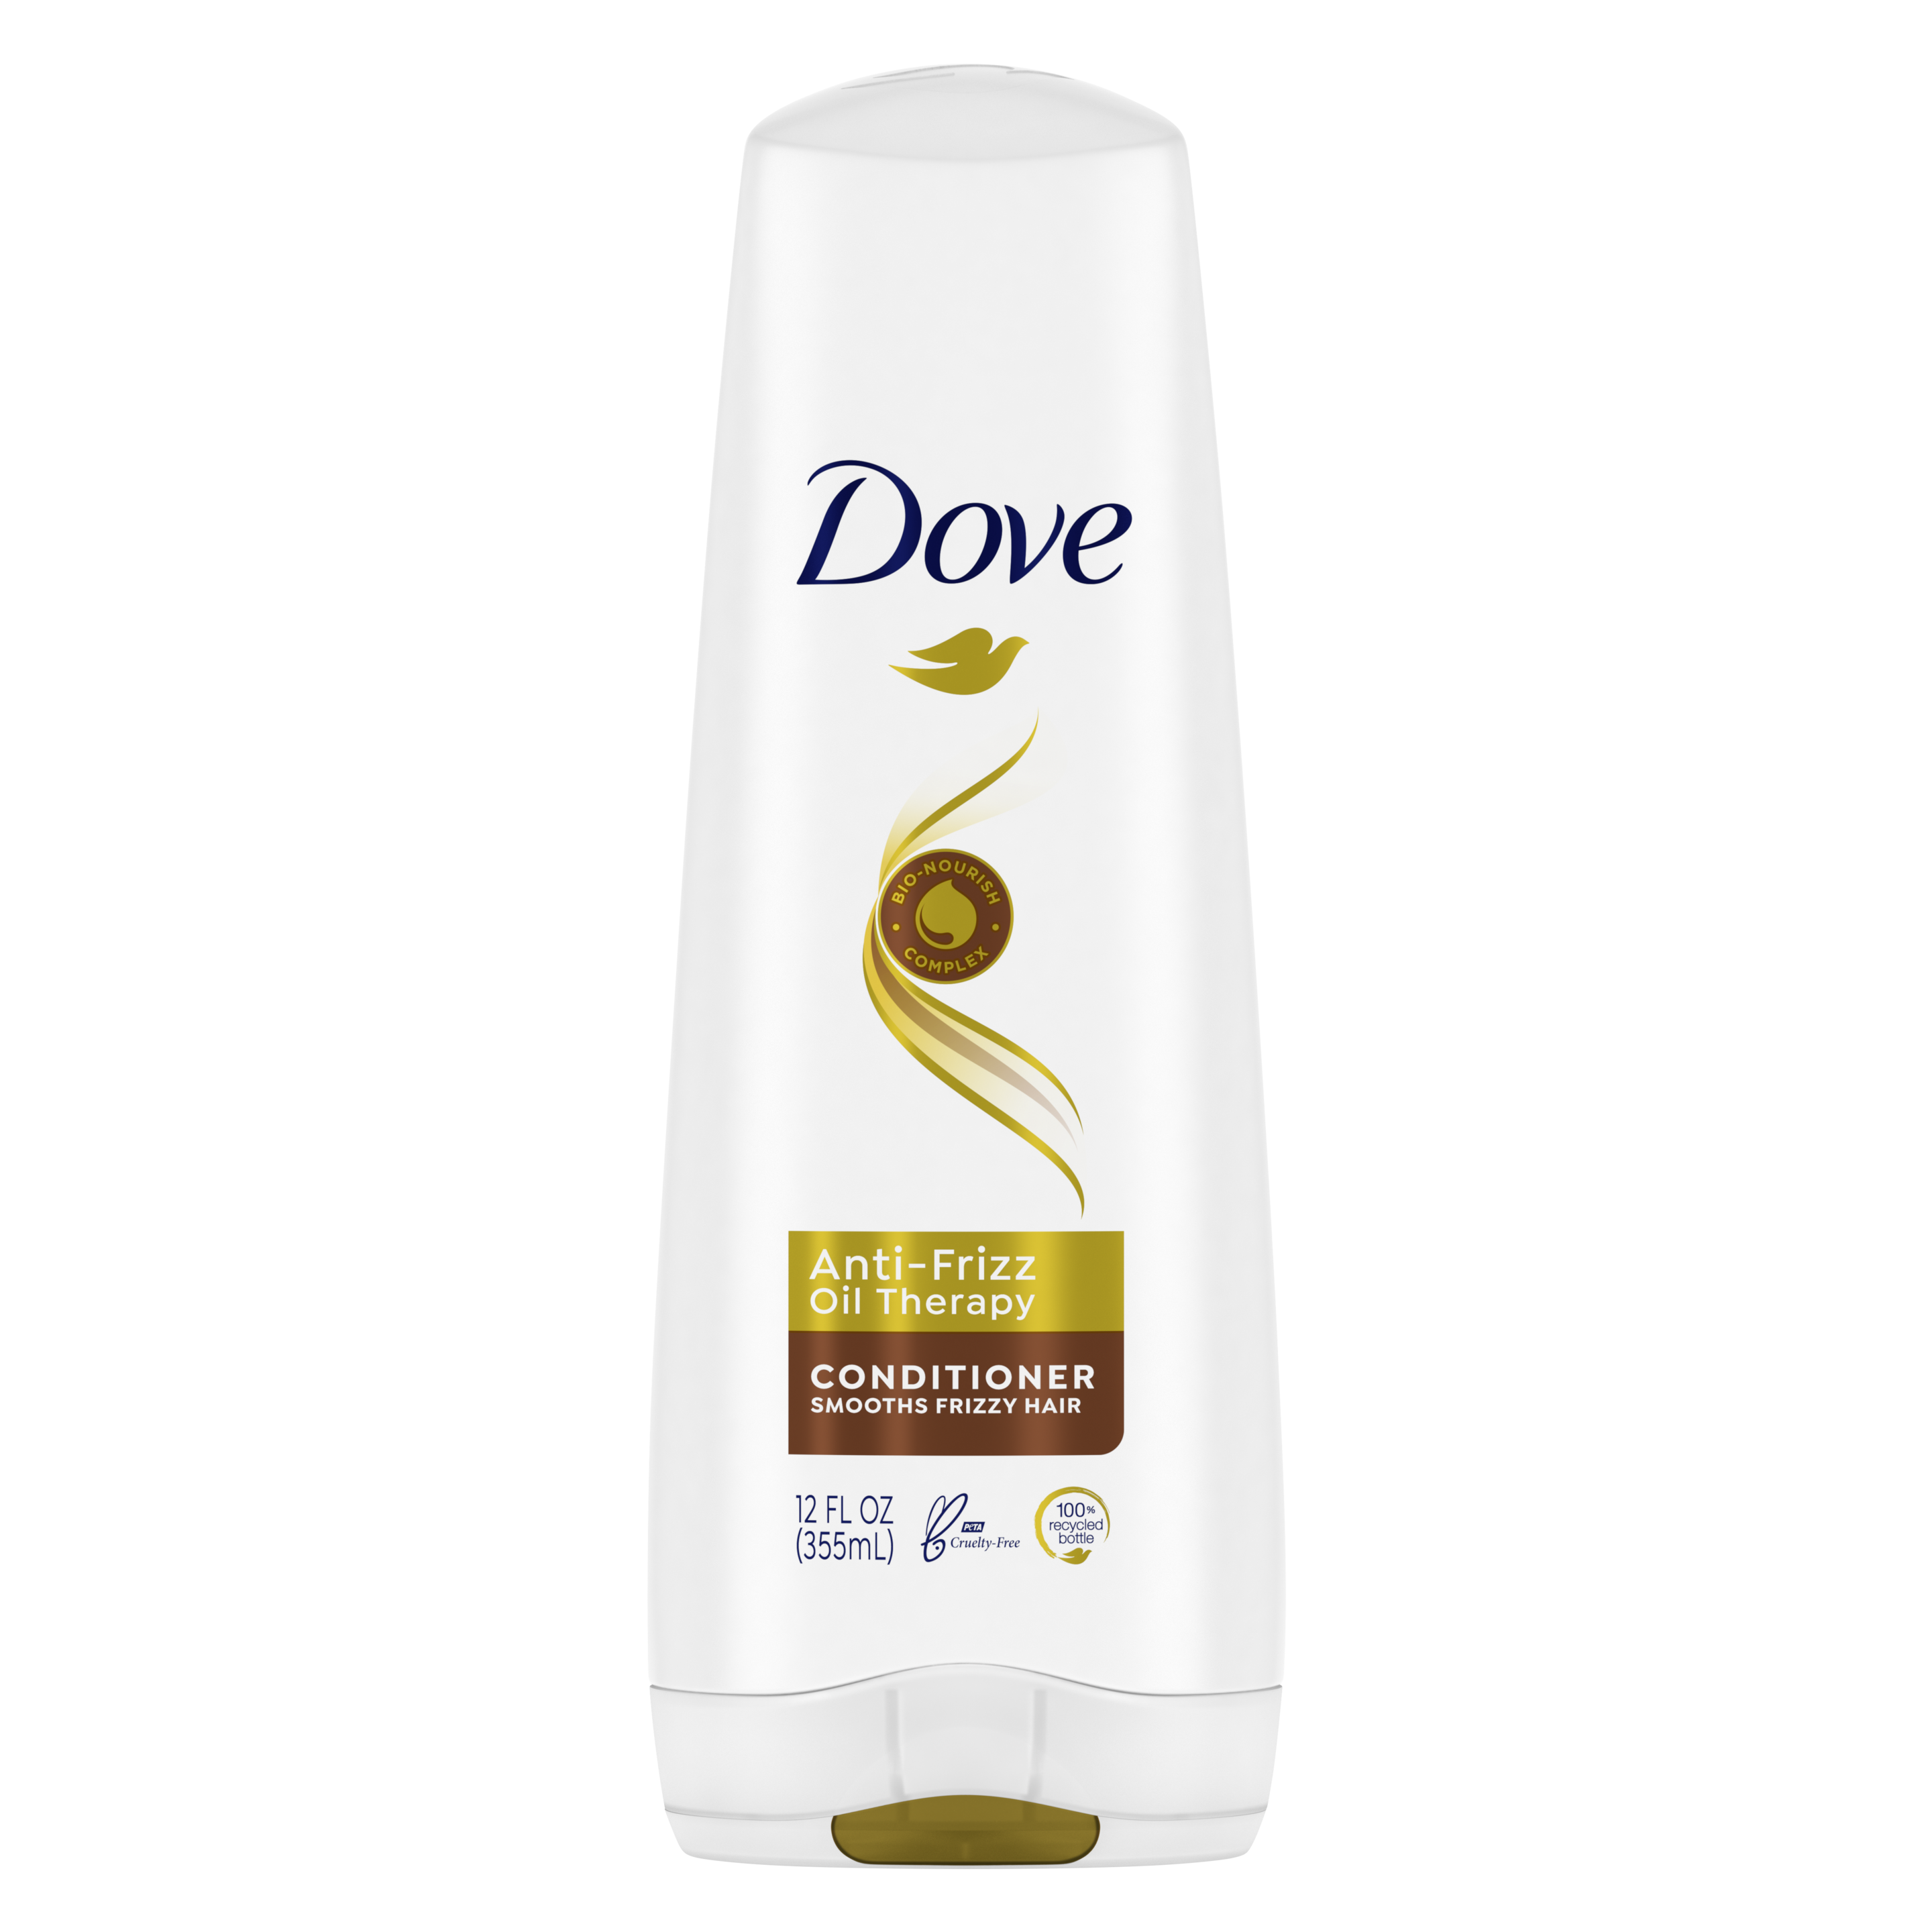 Dove Anti-Frizz Oil Therapy Conditioner 12 oz